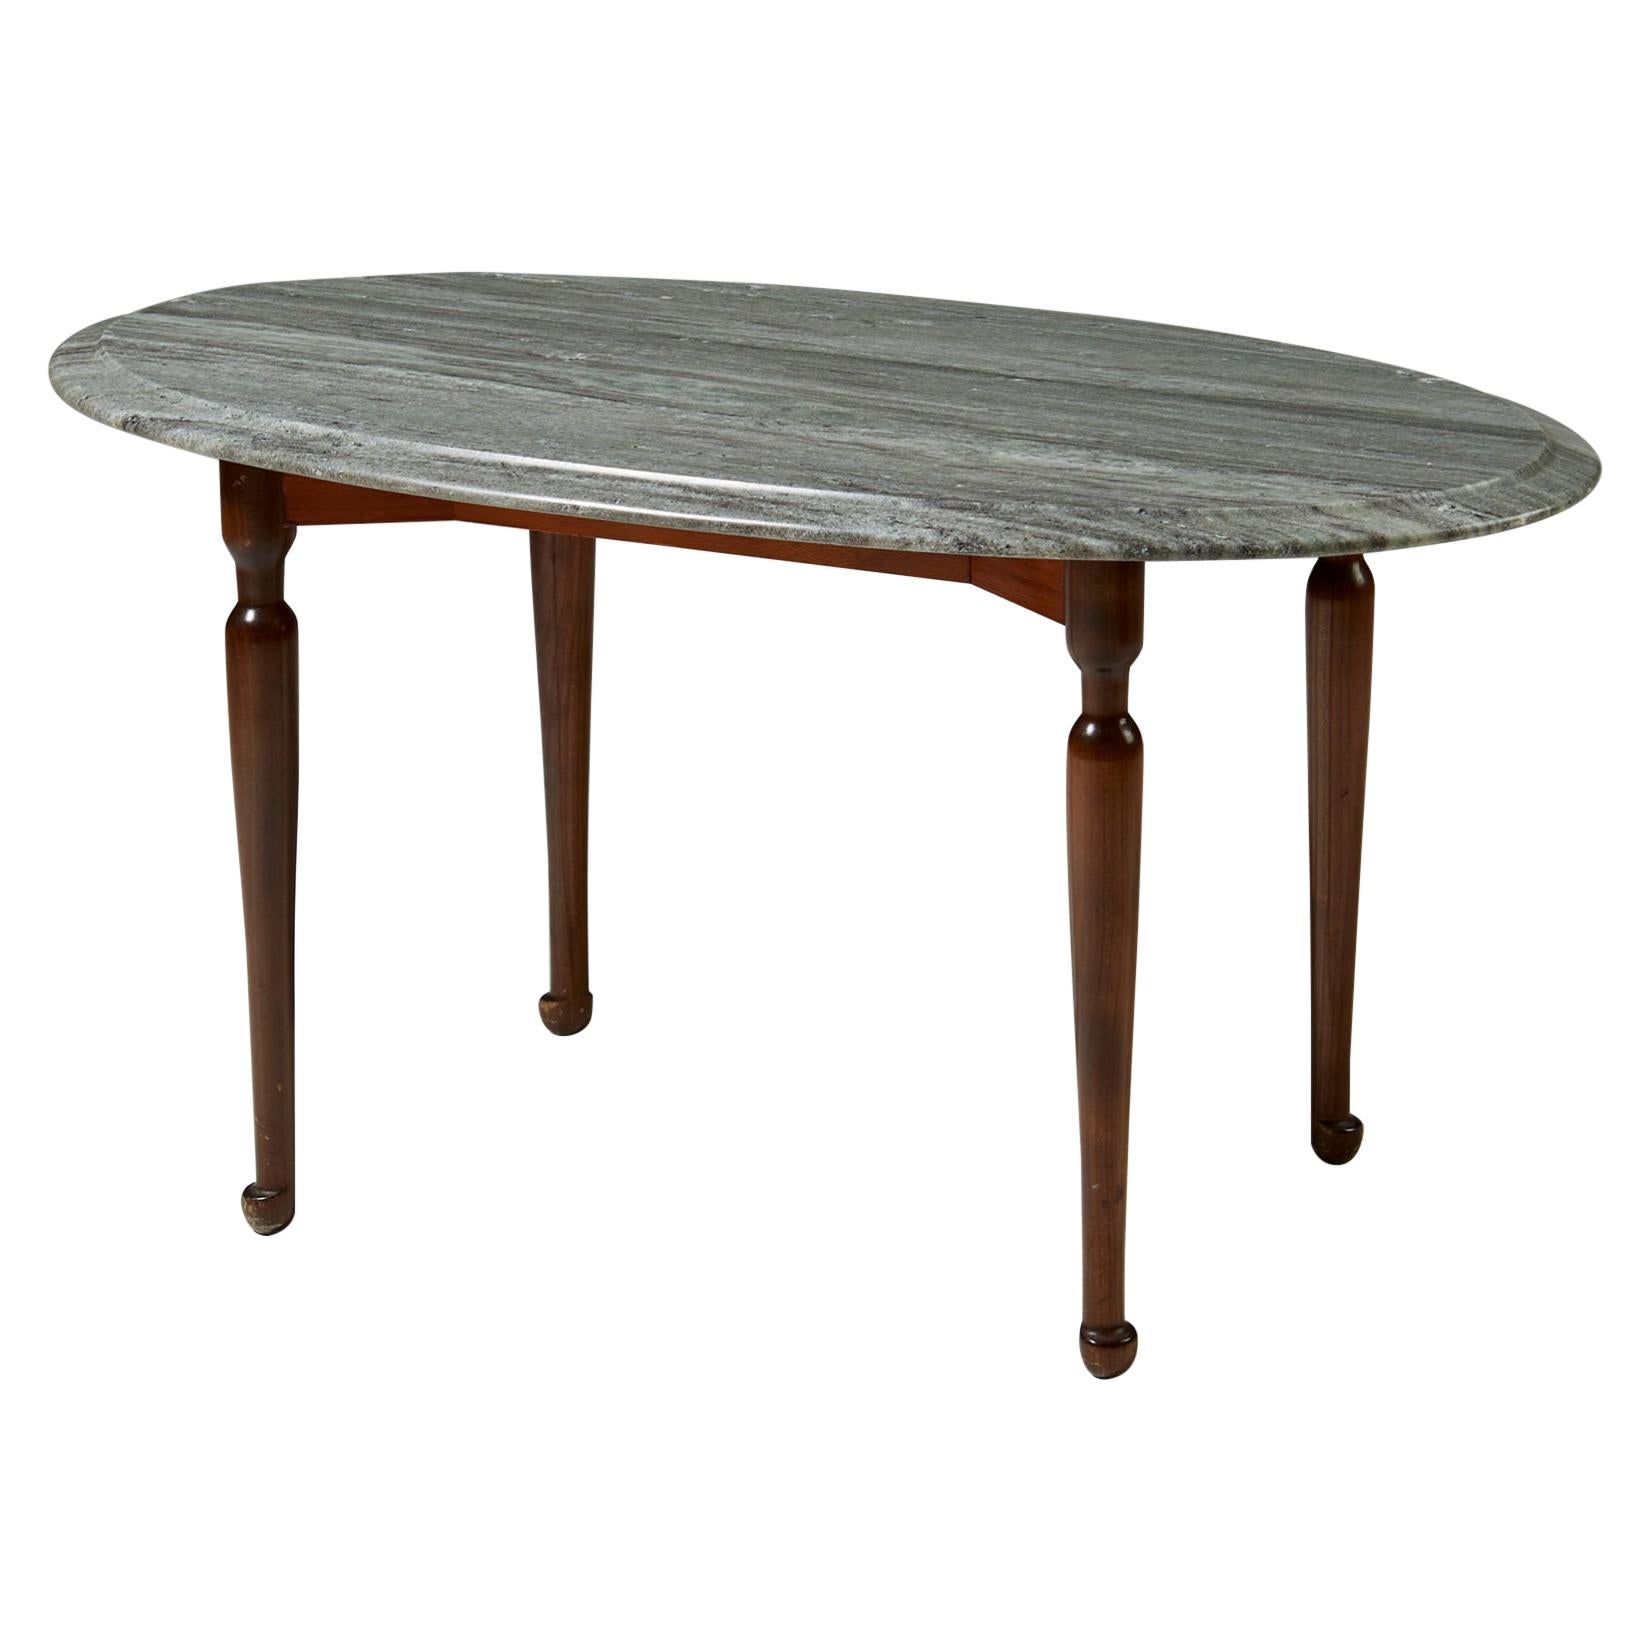 Occasional Table Designed by Josef Frank for Svenskt Tenn, Sweden, 1939